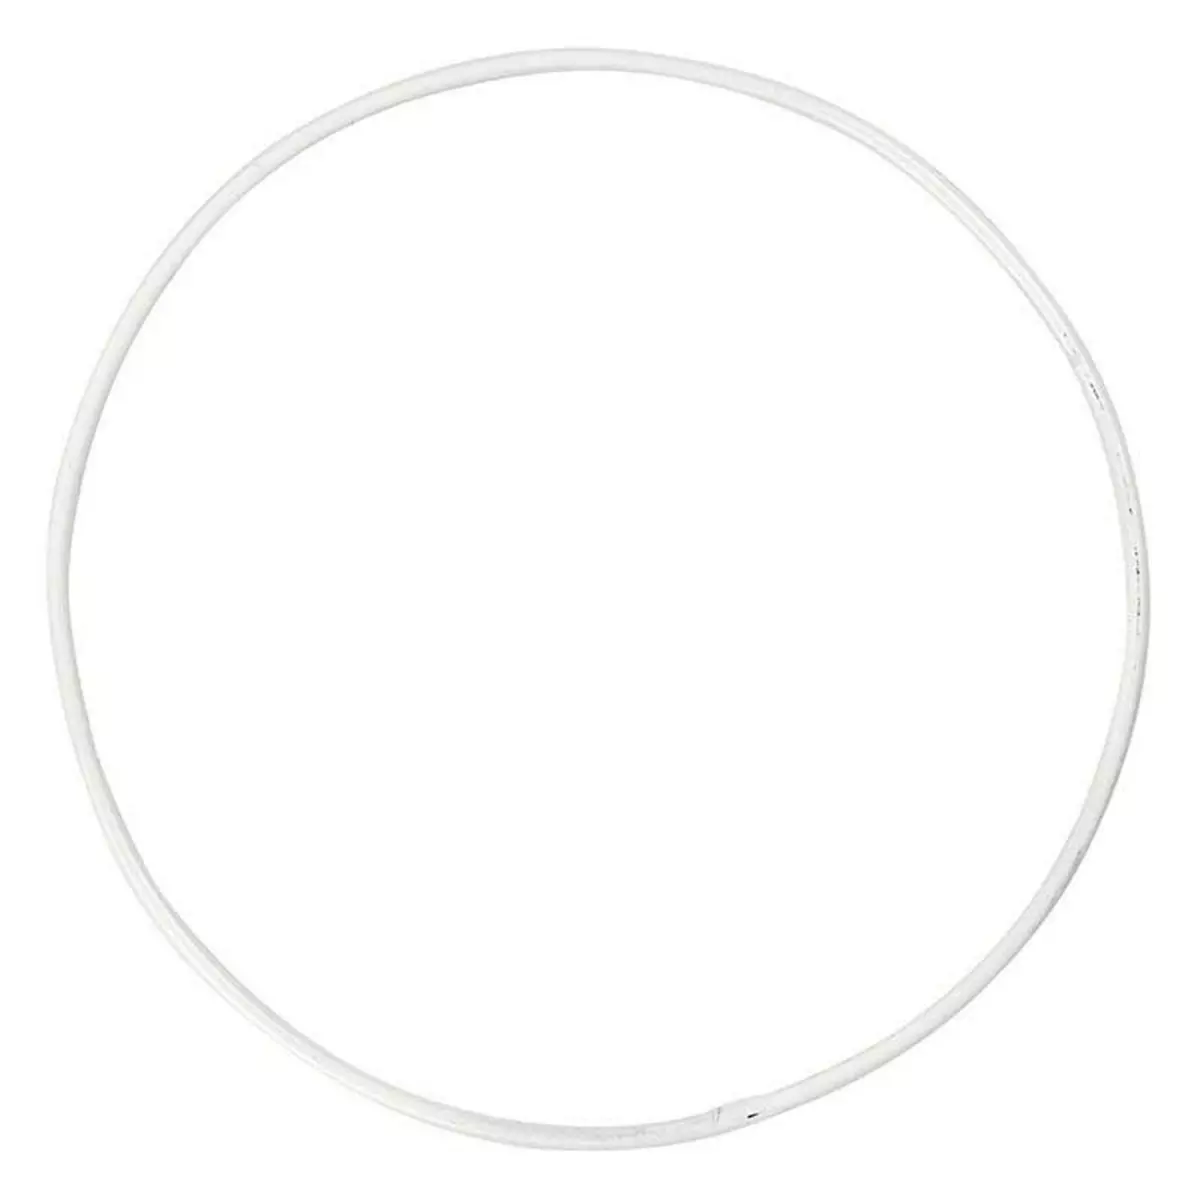  10 cercles en métal blanc - Ø 10 cm